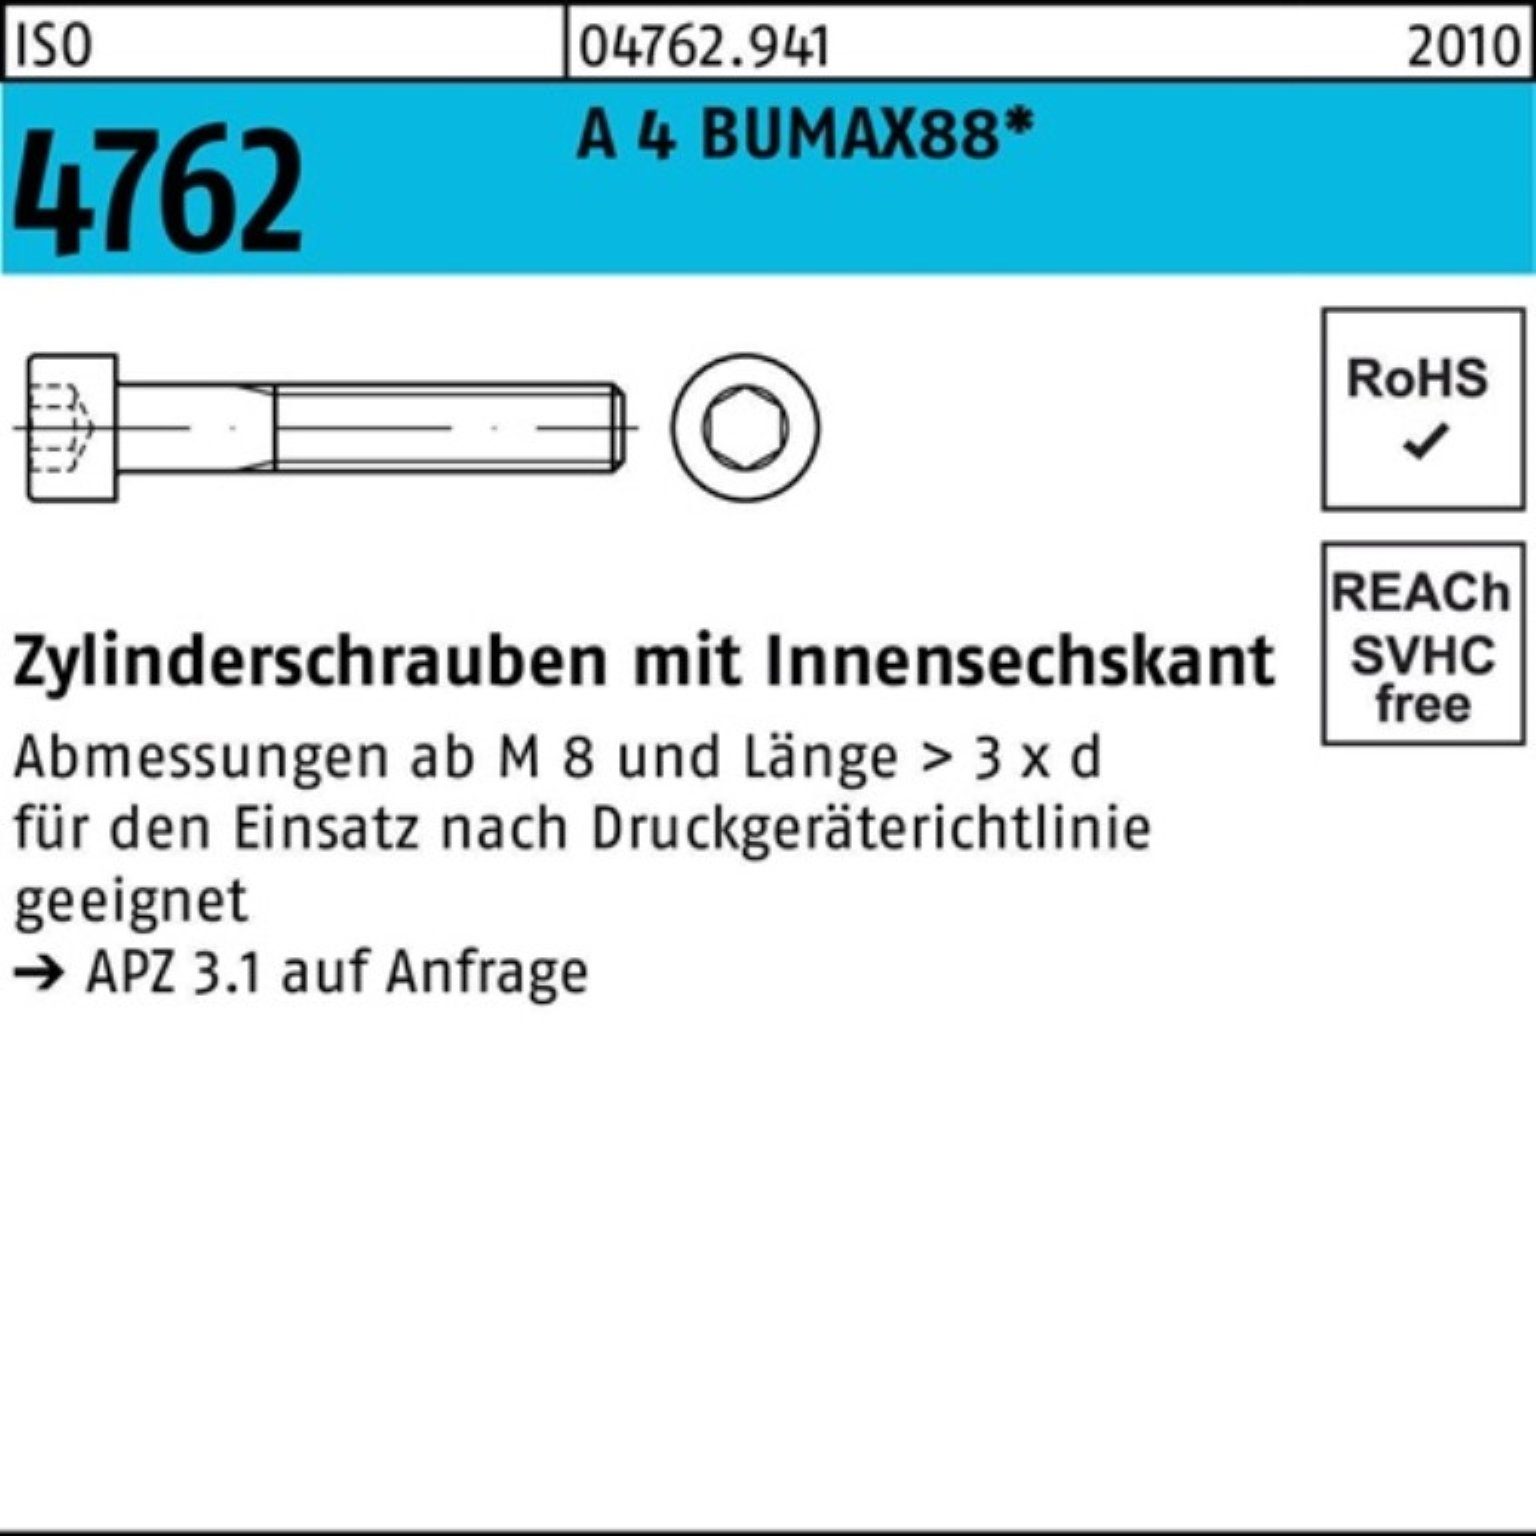 Bufab Zylinderschraube 100er Pack Zylinderschraube ISO 4762 Innen-6kt M6x 45 A 4 BUMAX88 100 | Schrauben